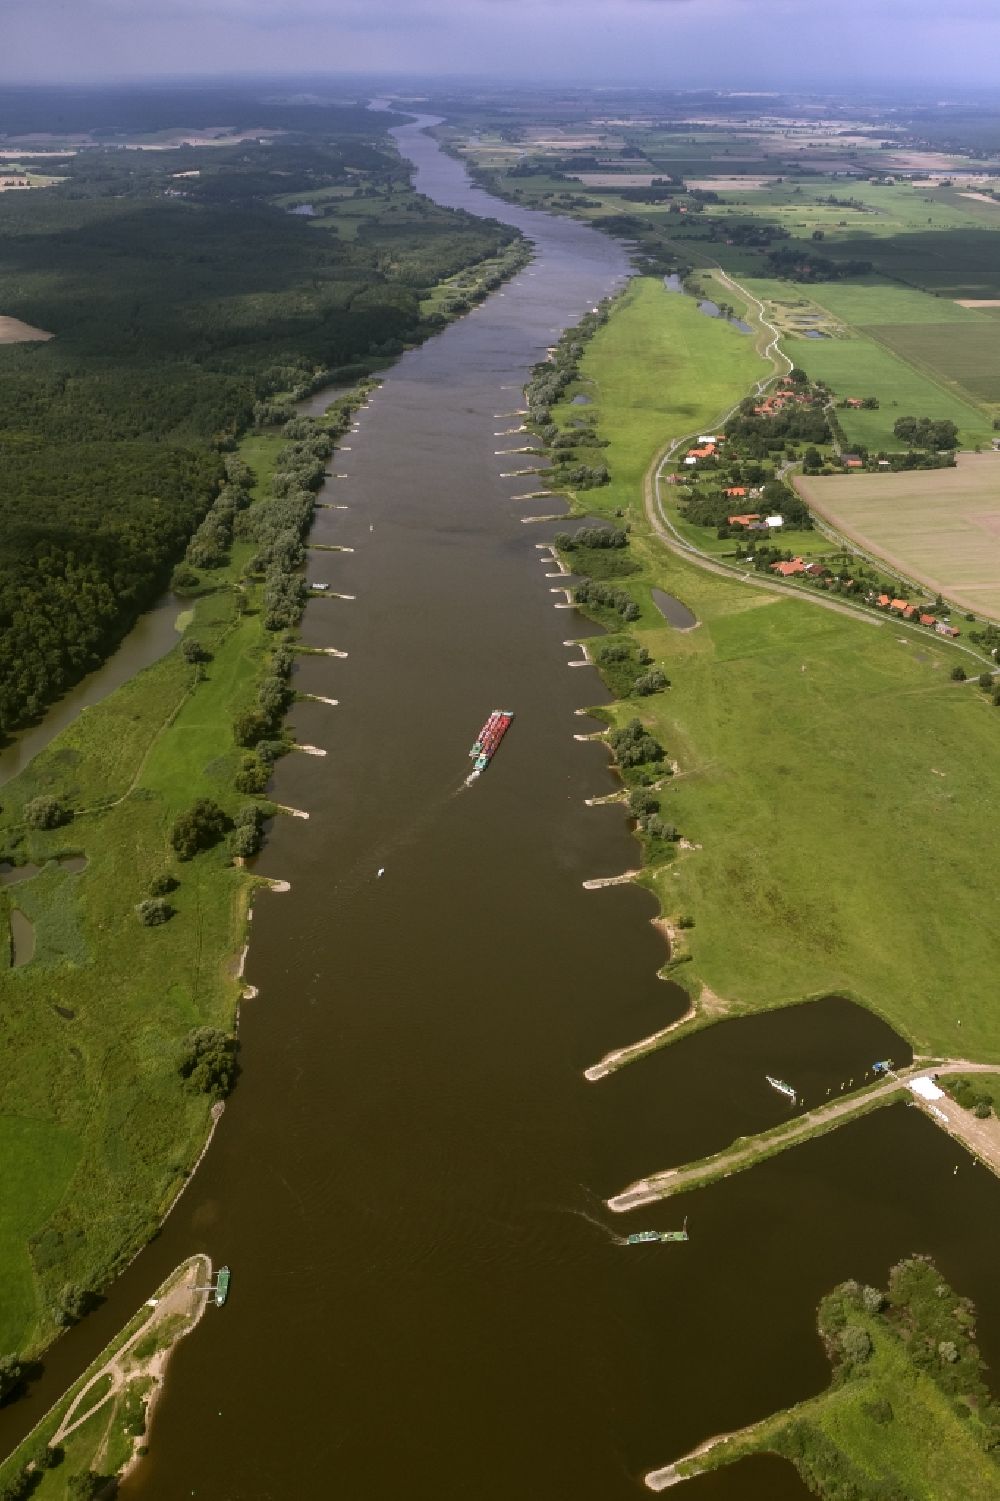 Aerial photograph Hitzacker - Shipping on the river Elbe near Hitzacker in Lower Saxony